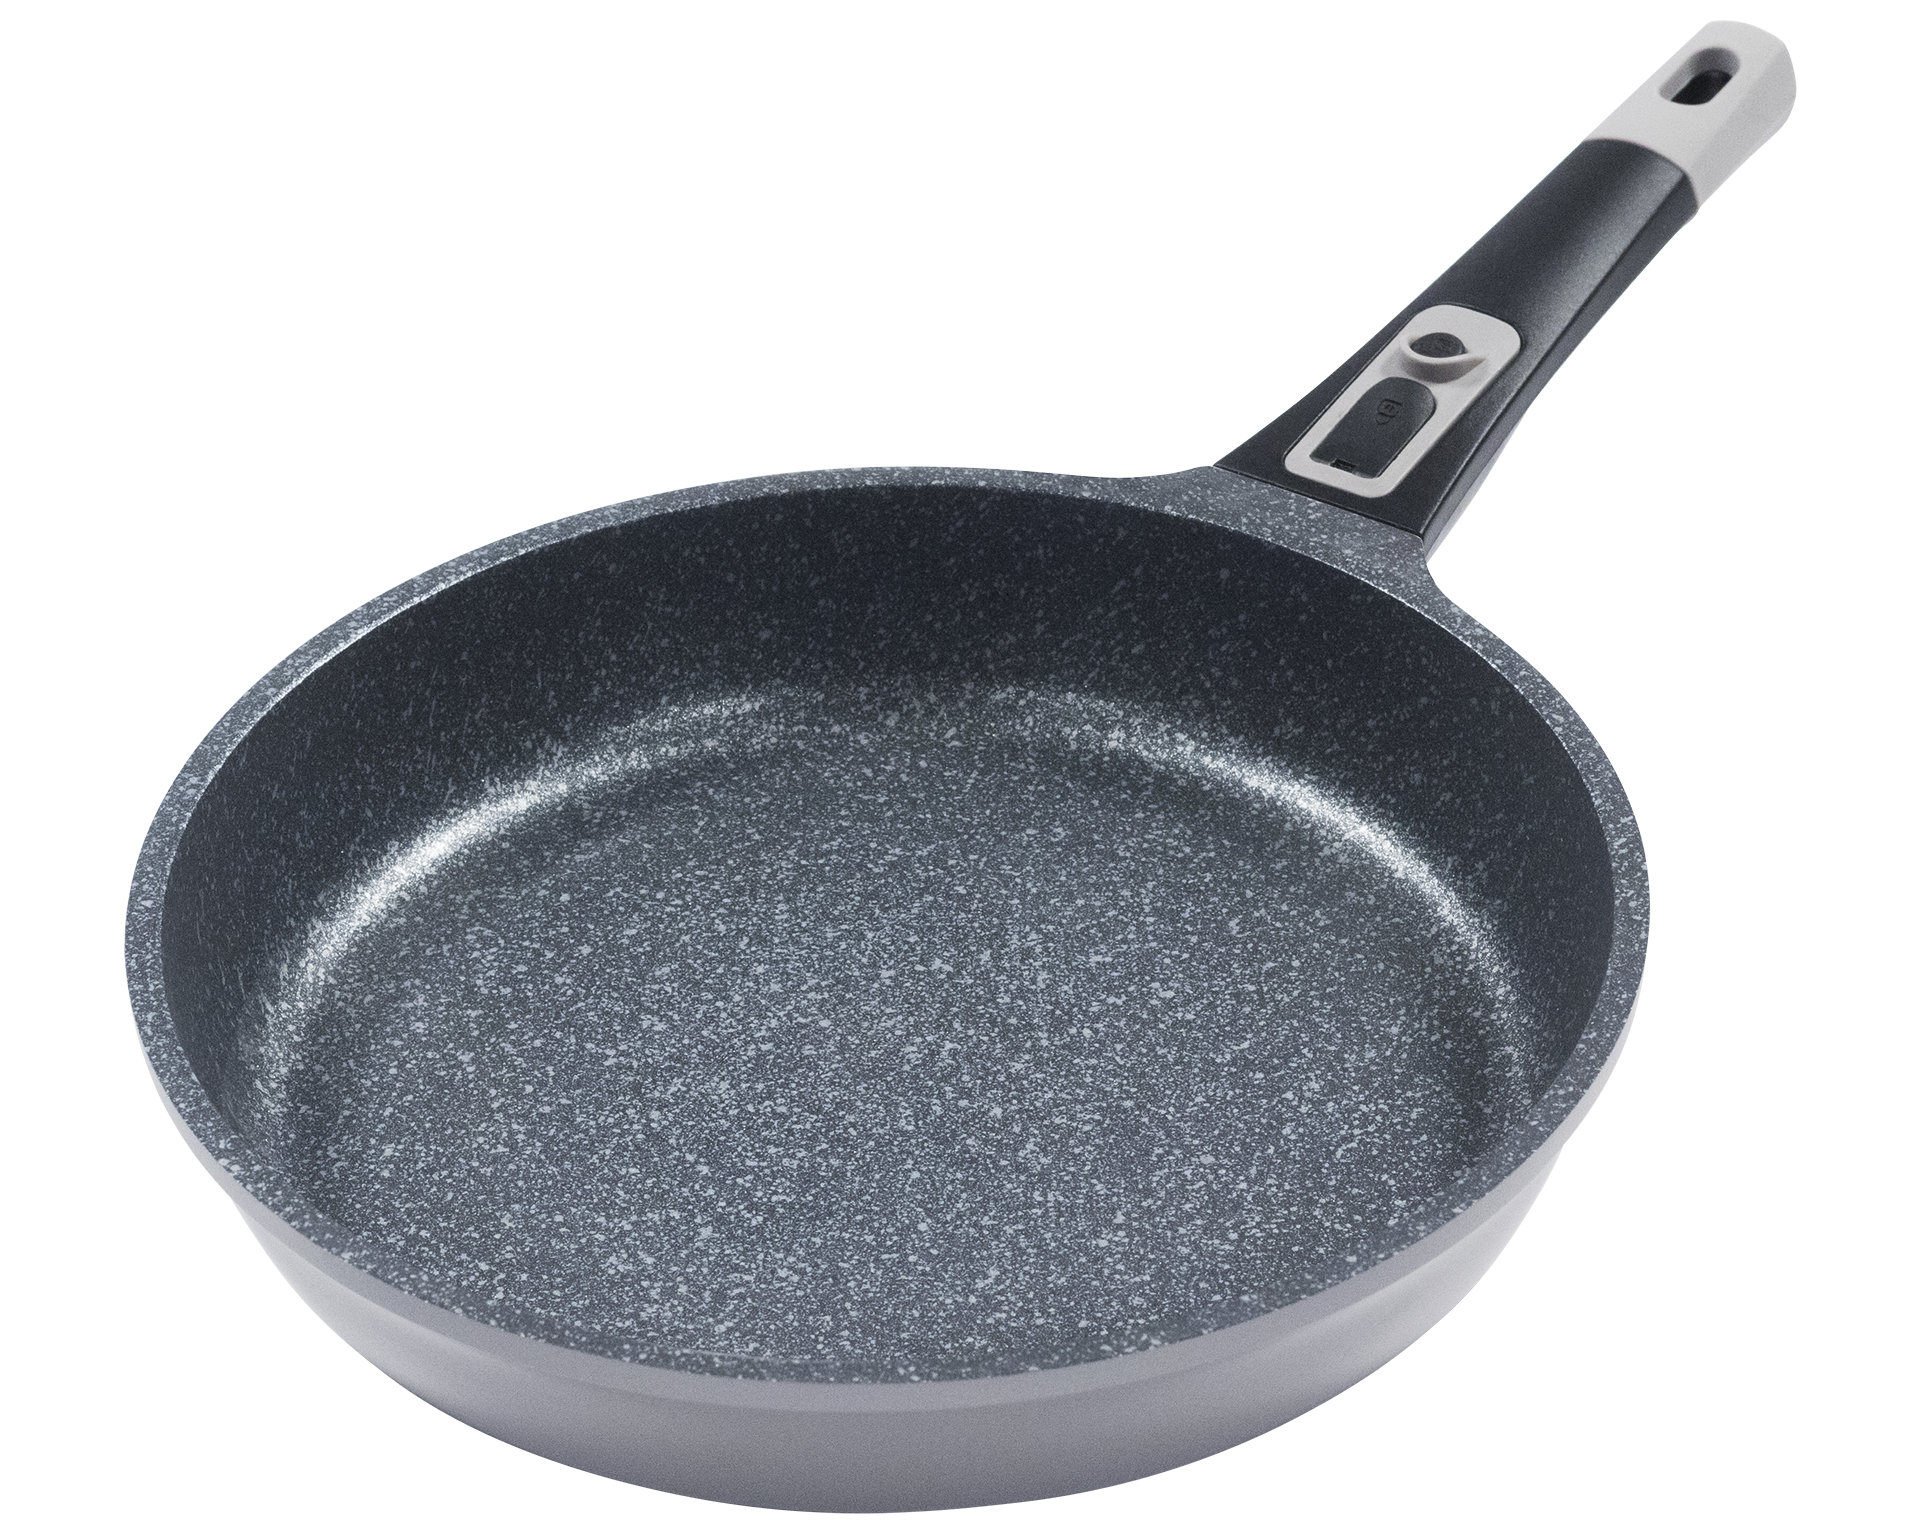 king 28 cm Frying Pan